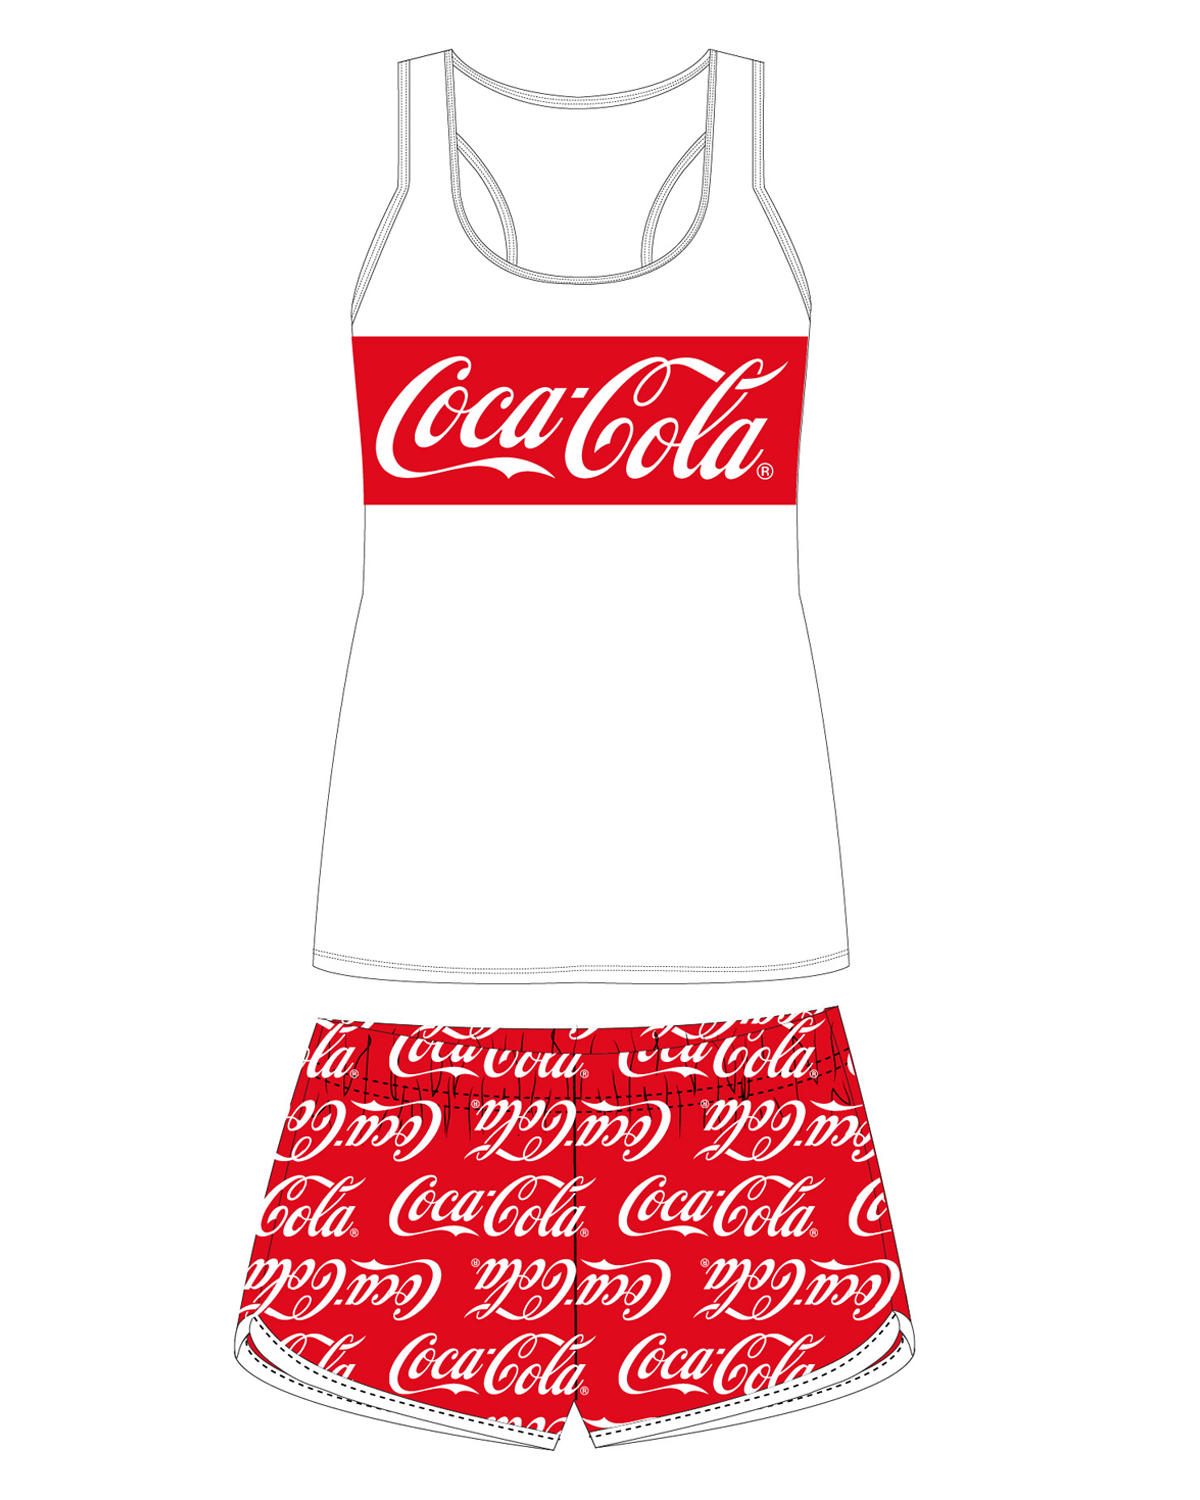 Coca-Cola - licence Dívčí pyžamo - Coca-Cola 5204019, bílá / červená Barva: Bílá, Velikost: 164